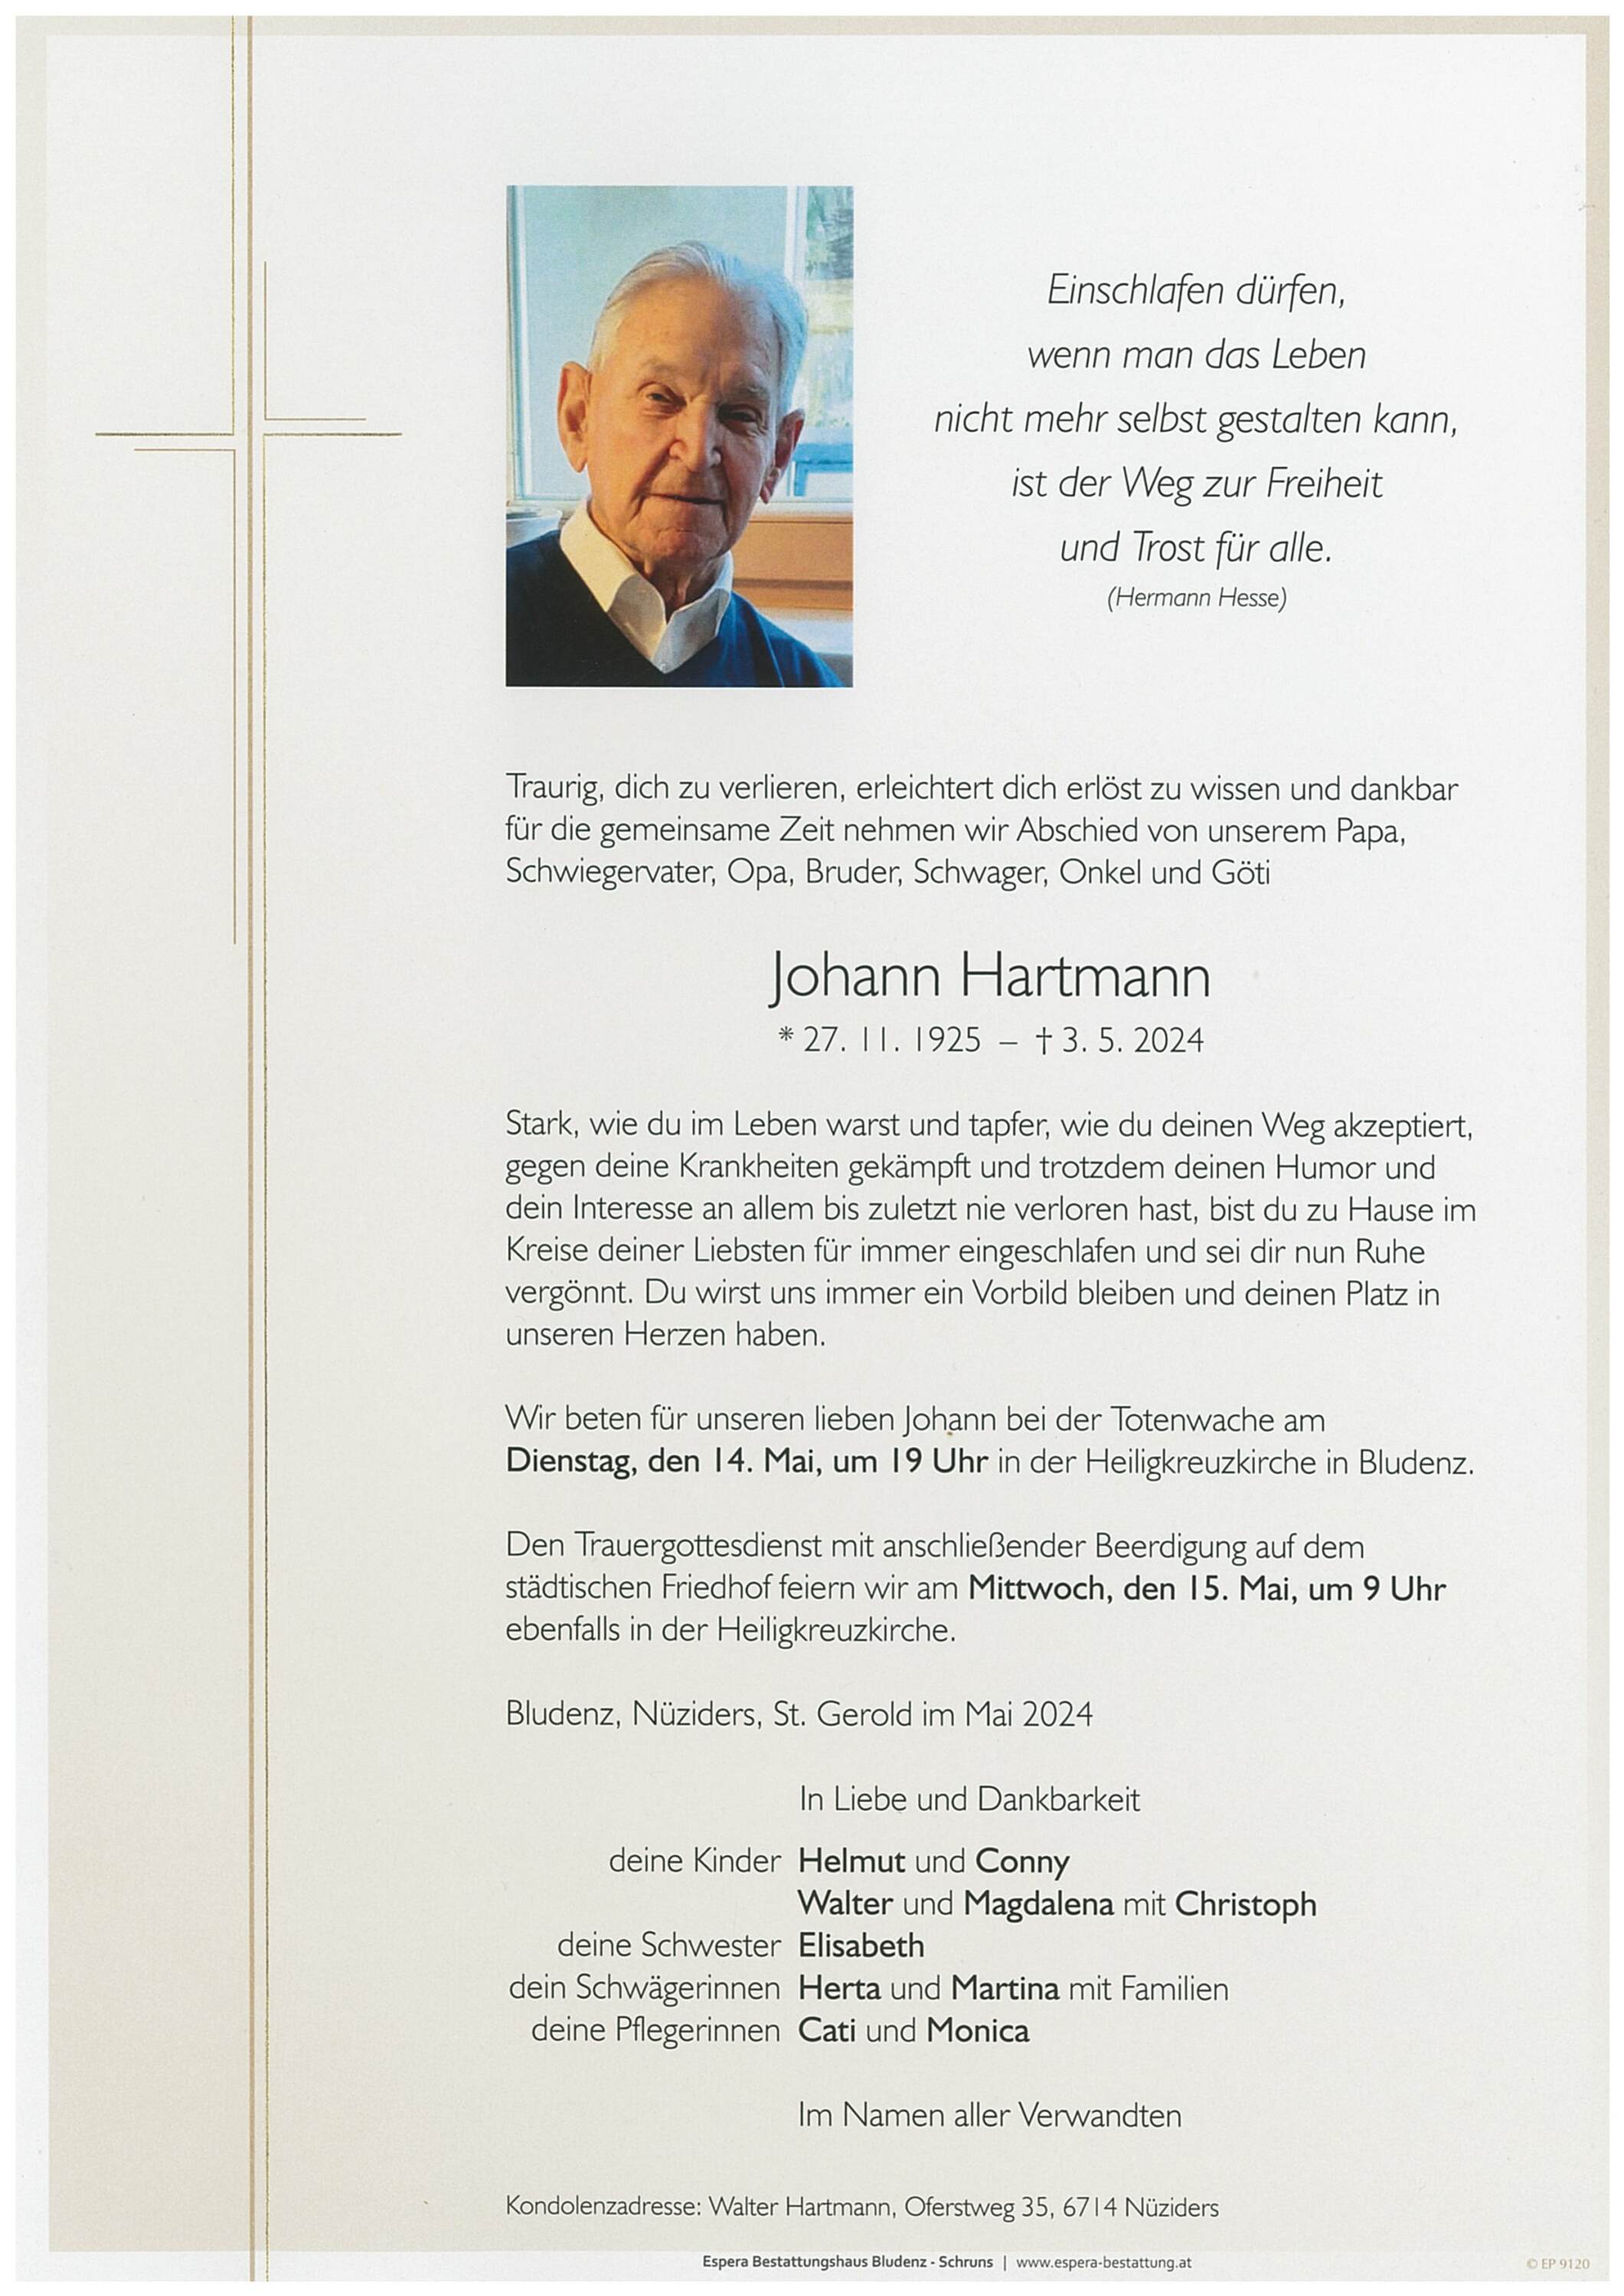 Johann Hartmann